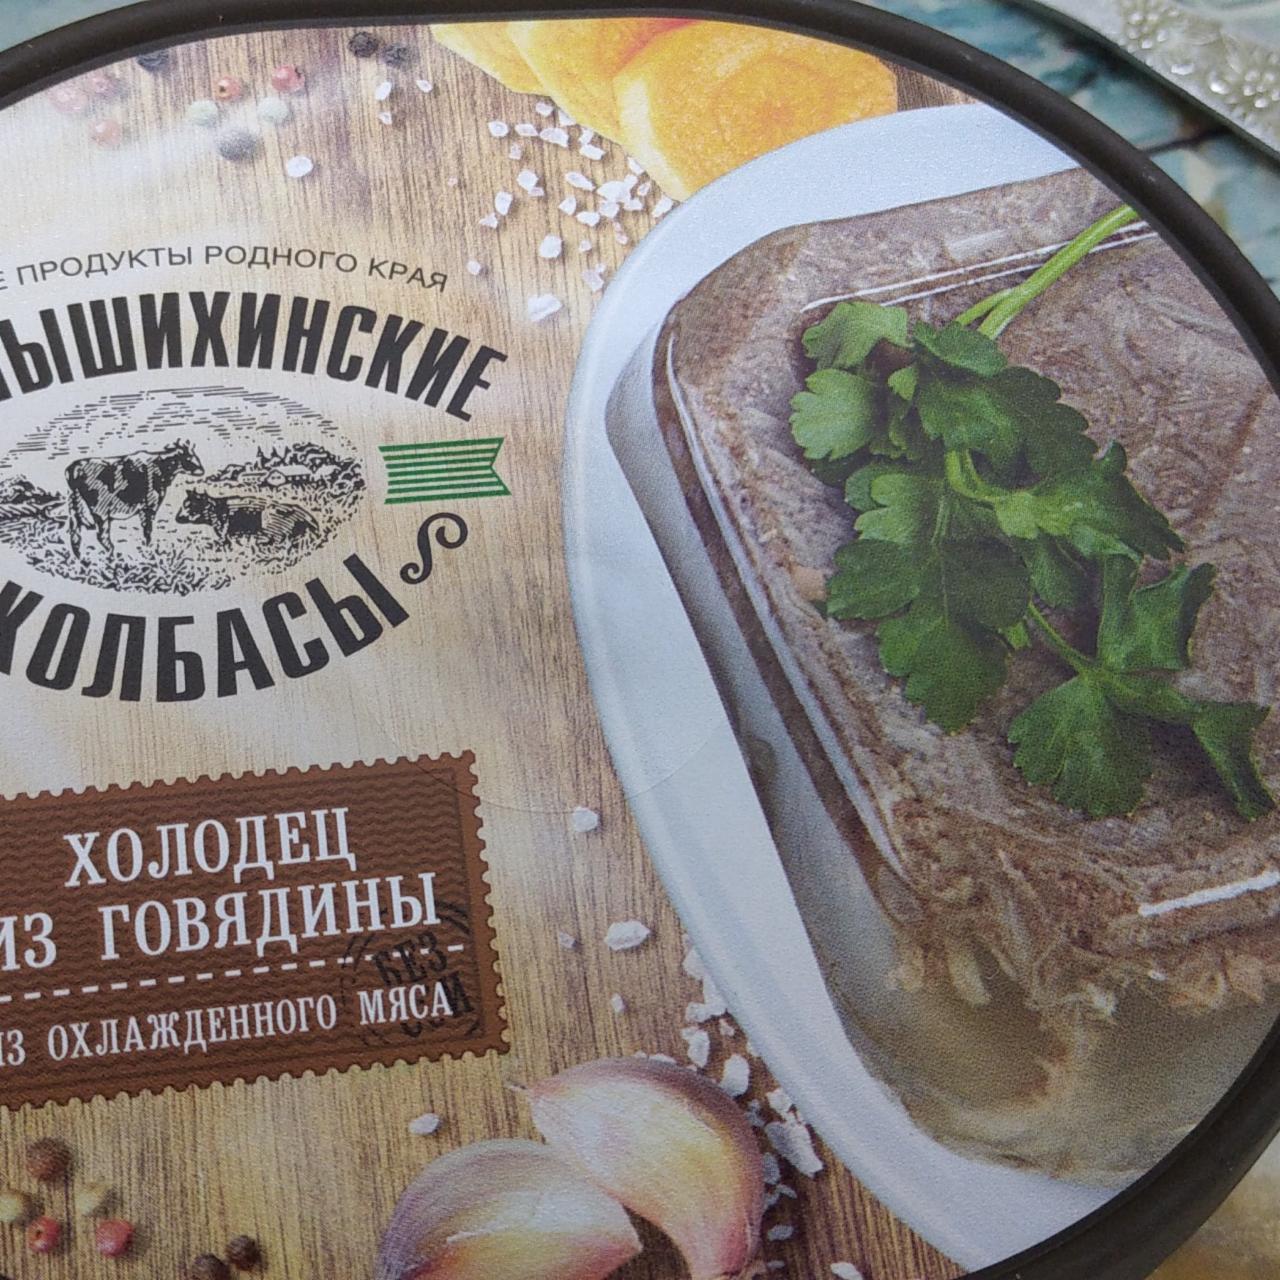 Фото - холодец из говядины Чернышихинские колбасы